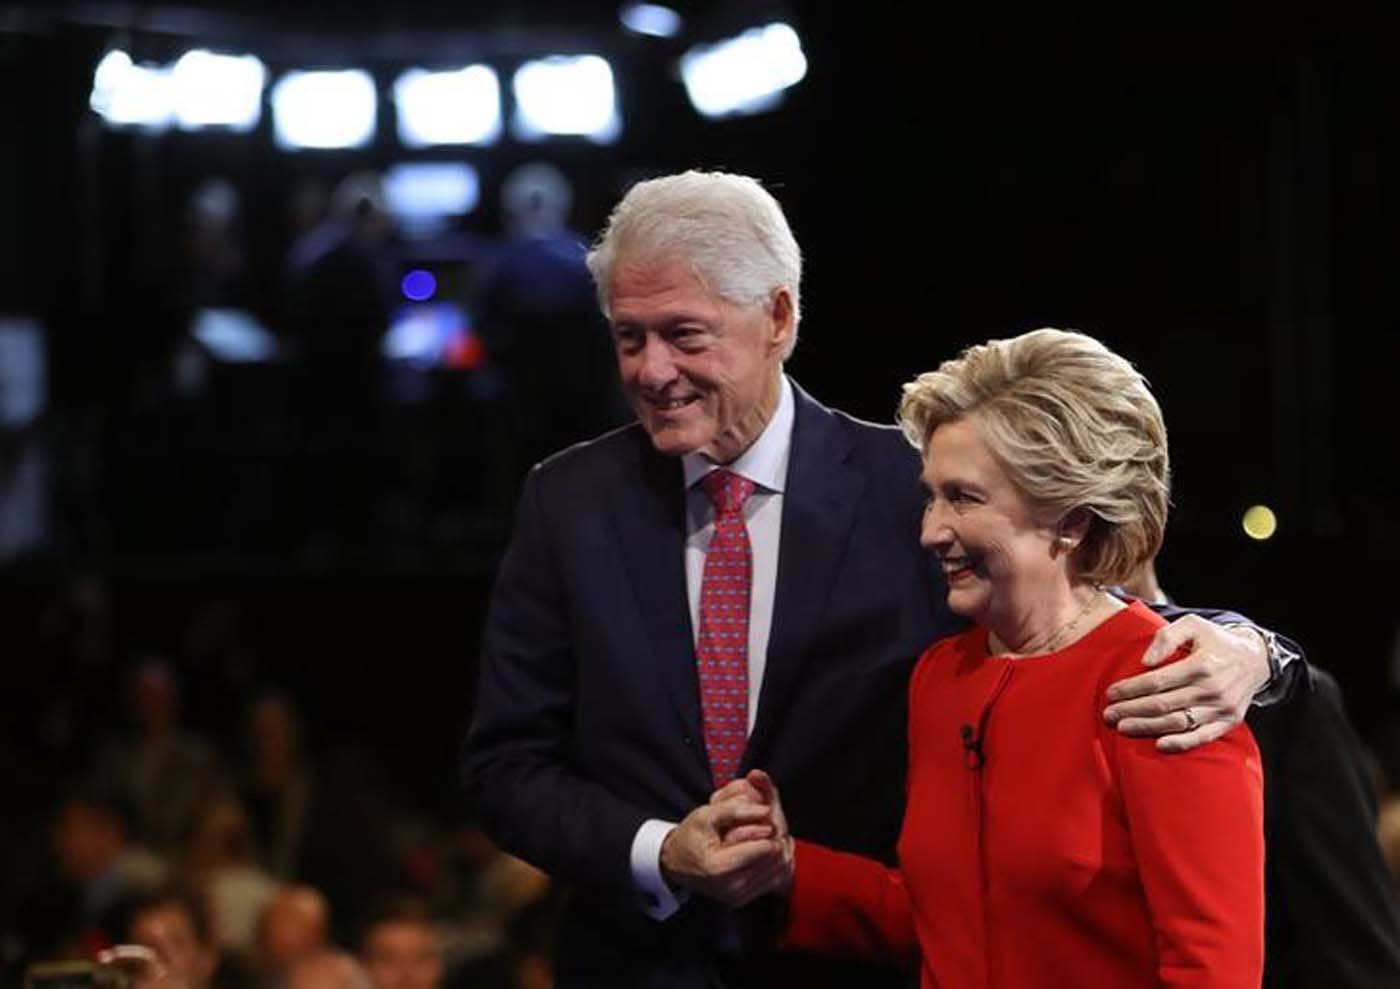 Bill Clinton, ¿primer caballero o simplemente “señor expresidente”?